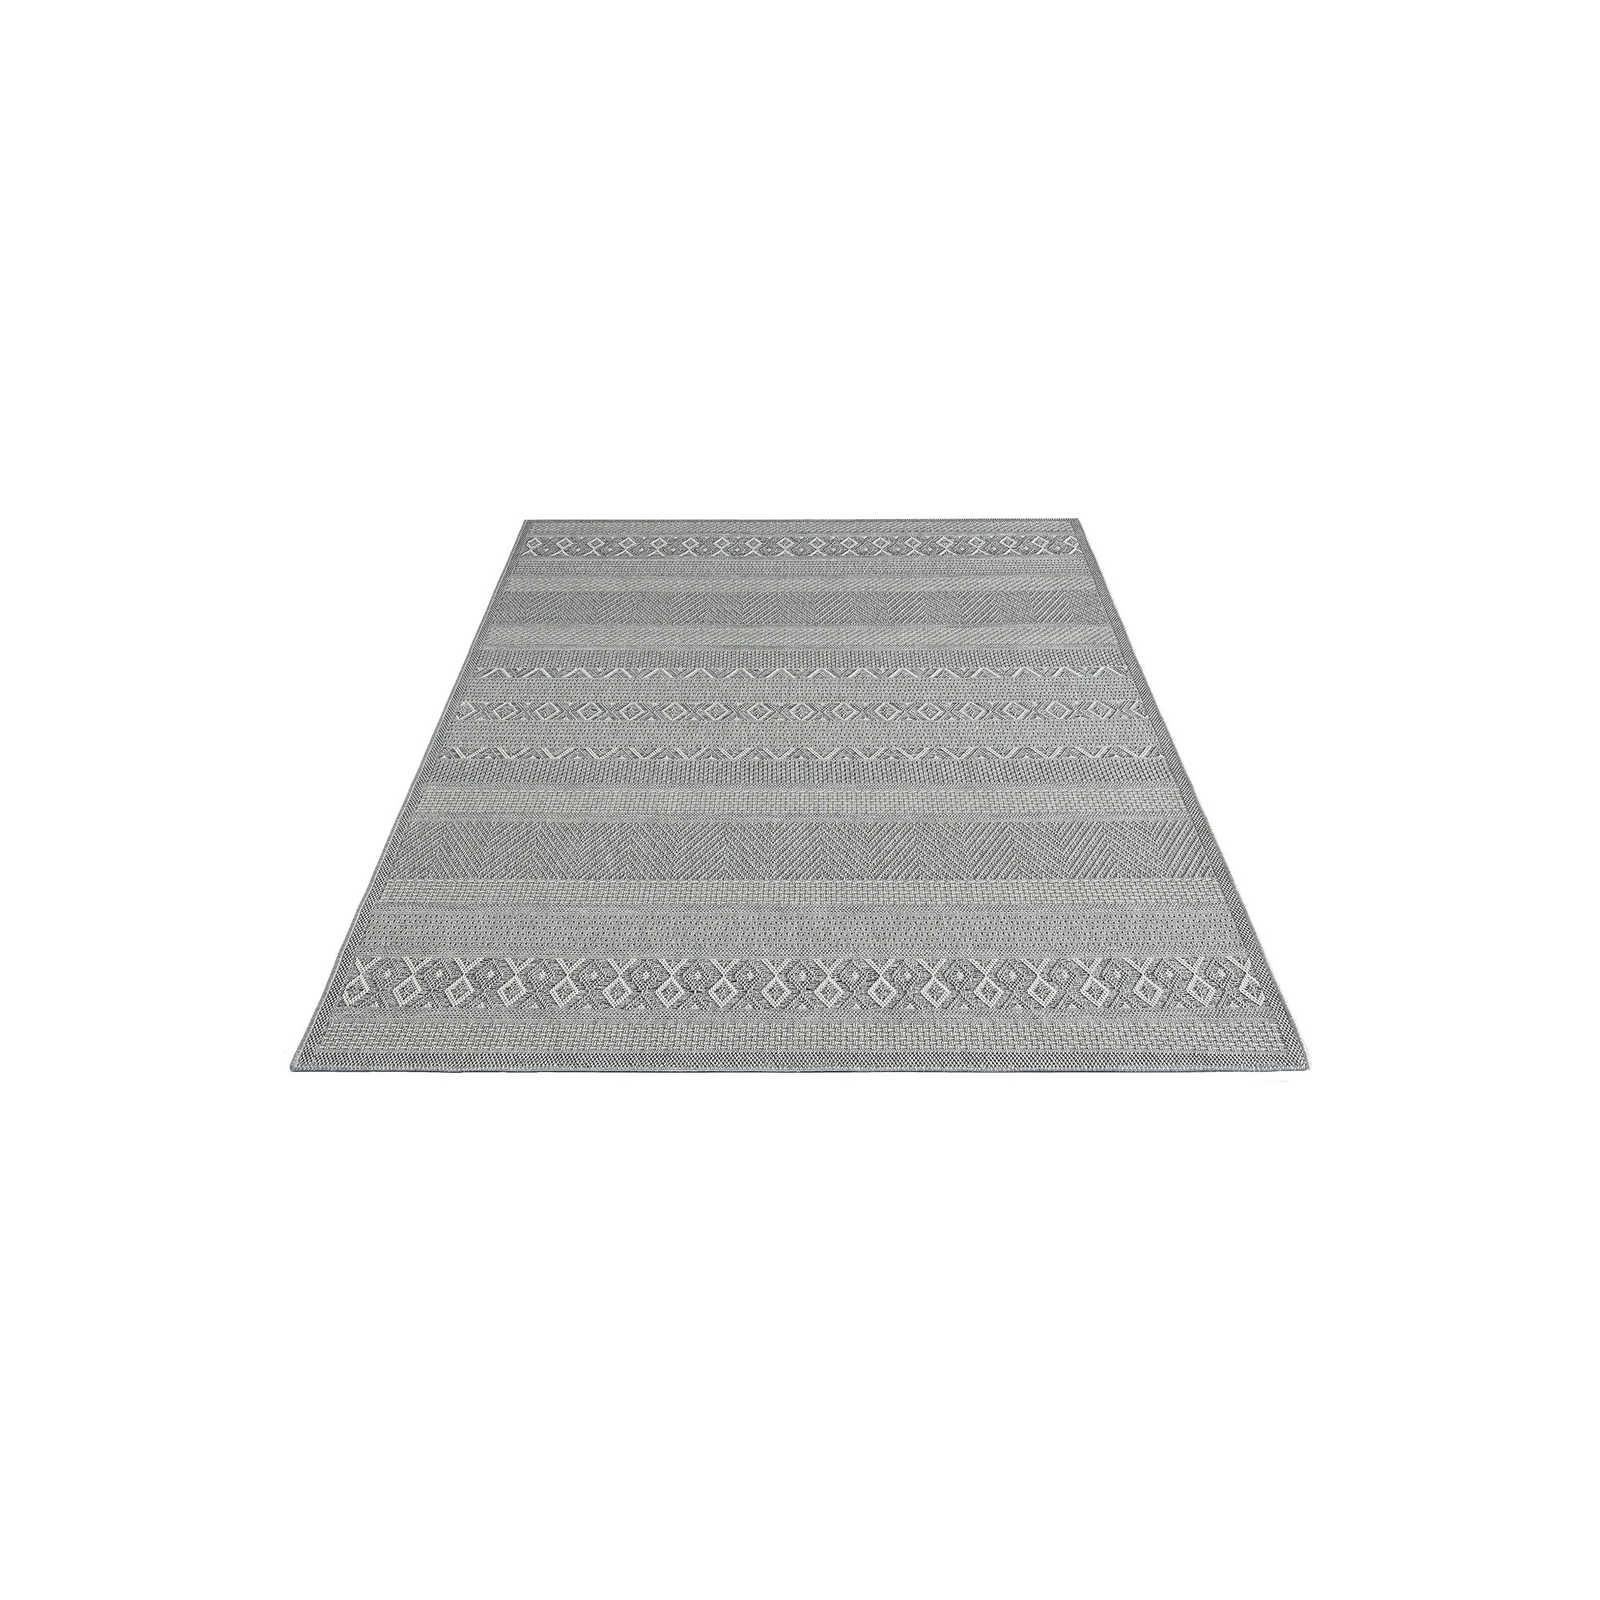 Tappeto da esterno a motivi semplici in grigio - 150 x 80 cm
